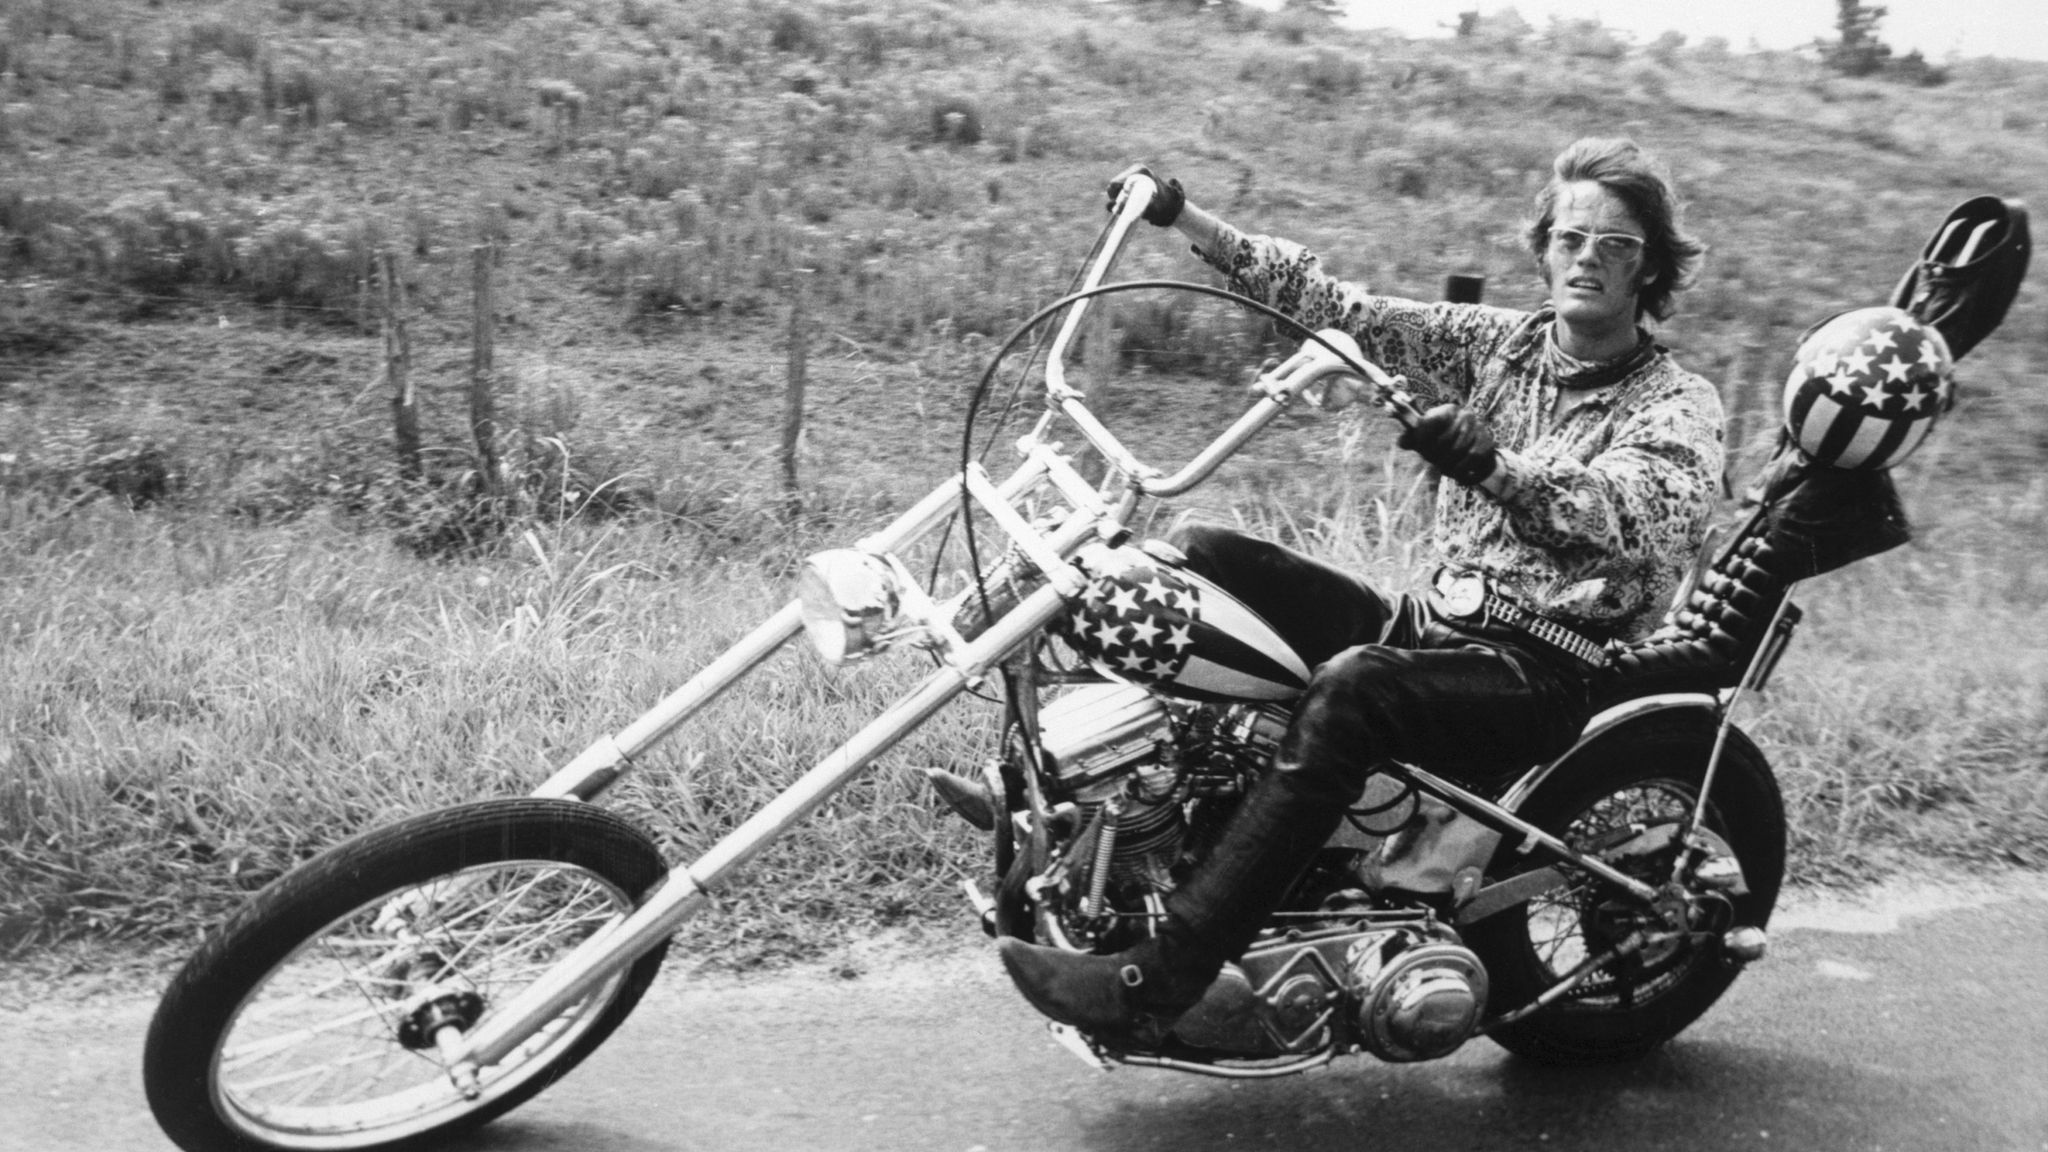 Easy rider не работает. Беспечный ездок (1969) Деннис хоппер. Деннис хоппер Беспечный ездок. Джек Николсон Беспечный ездок. Харлей Беспечный ездок.